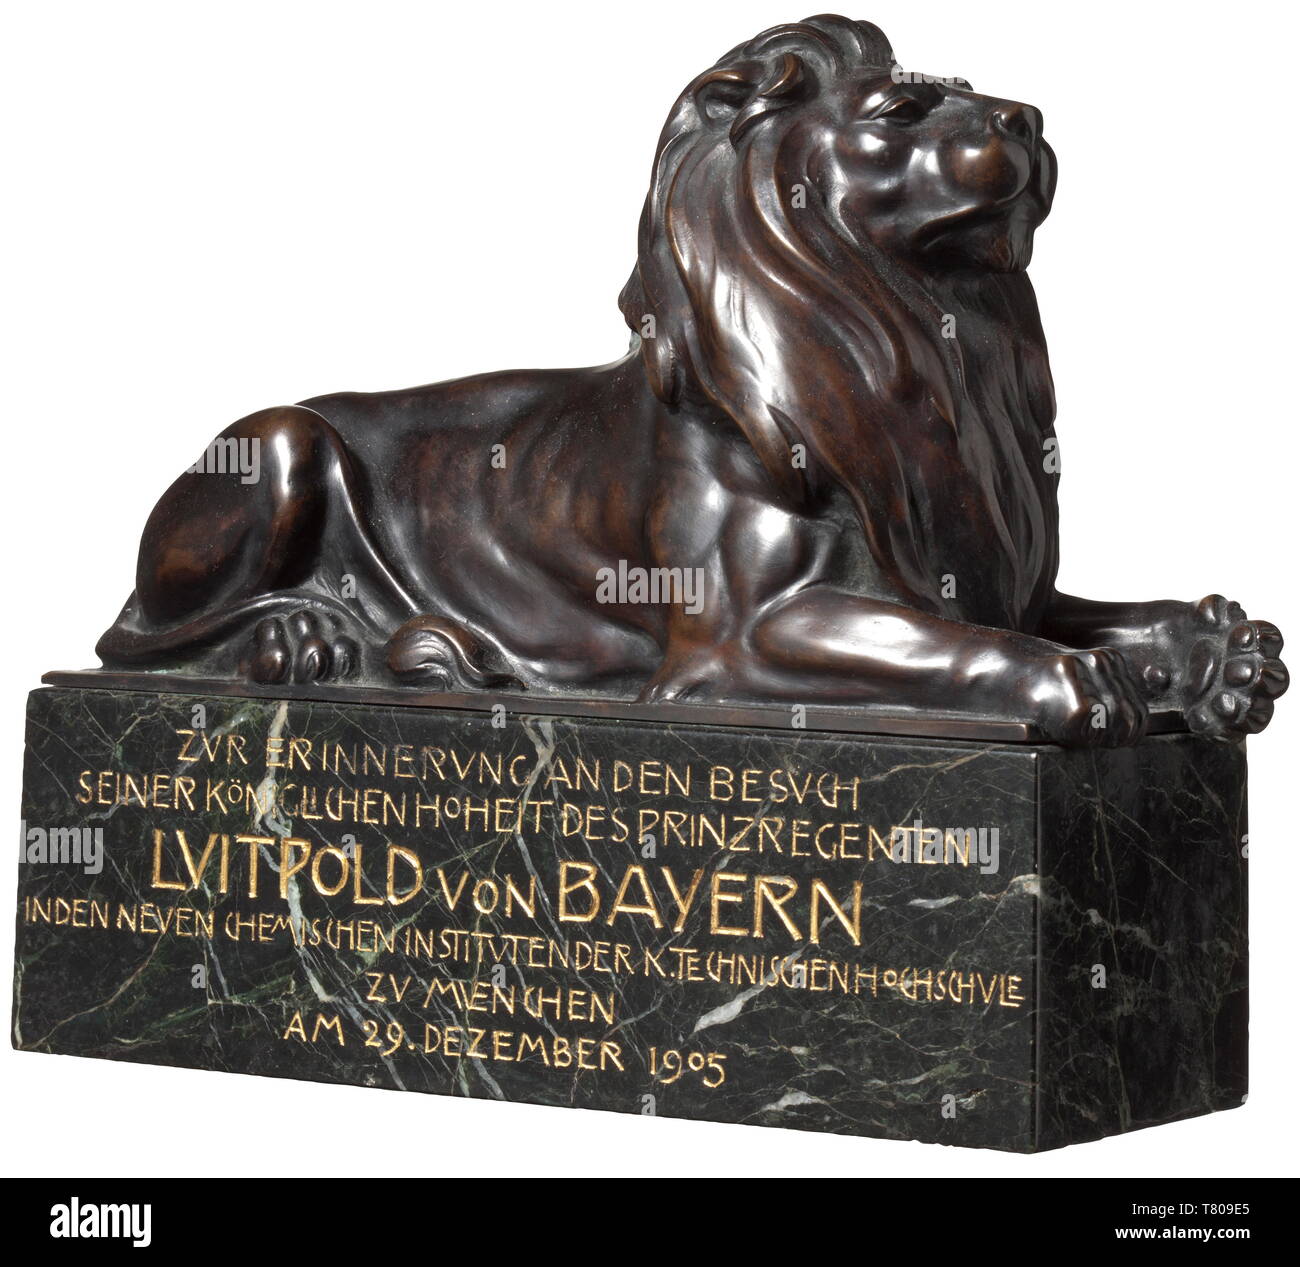 Le prince régent Luitpold de Bavière (1821 - 1912) - un lion de bronze. Un lion de bronze sur un socle en marbre avec l'inscription. La signature de l'artiste sur la plinthe. Avec une inscription sur l'avant la commémoration d'une visite par le Prince Régent à l'Institut de technologie de Munich 1905. Dimensions 20 x 17 x 7 cm. Georg Albertshofer (1864 - 1933) a été professeur à l'Académie de Munich et créé des célèbres sculptures et statues. La figure de bronze était un cadeau à la maison royale de Bavière. En direct de la possessions de la famille régnante de Bavière, historique, Additional-Rights. Clearance-Info-Not-Available- Banque D'Images